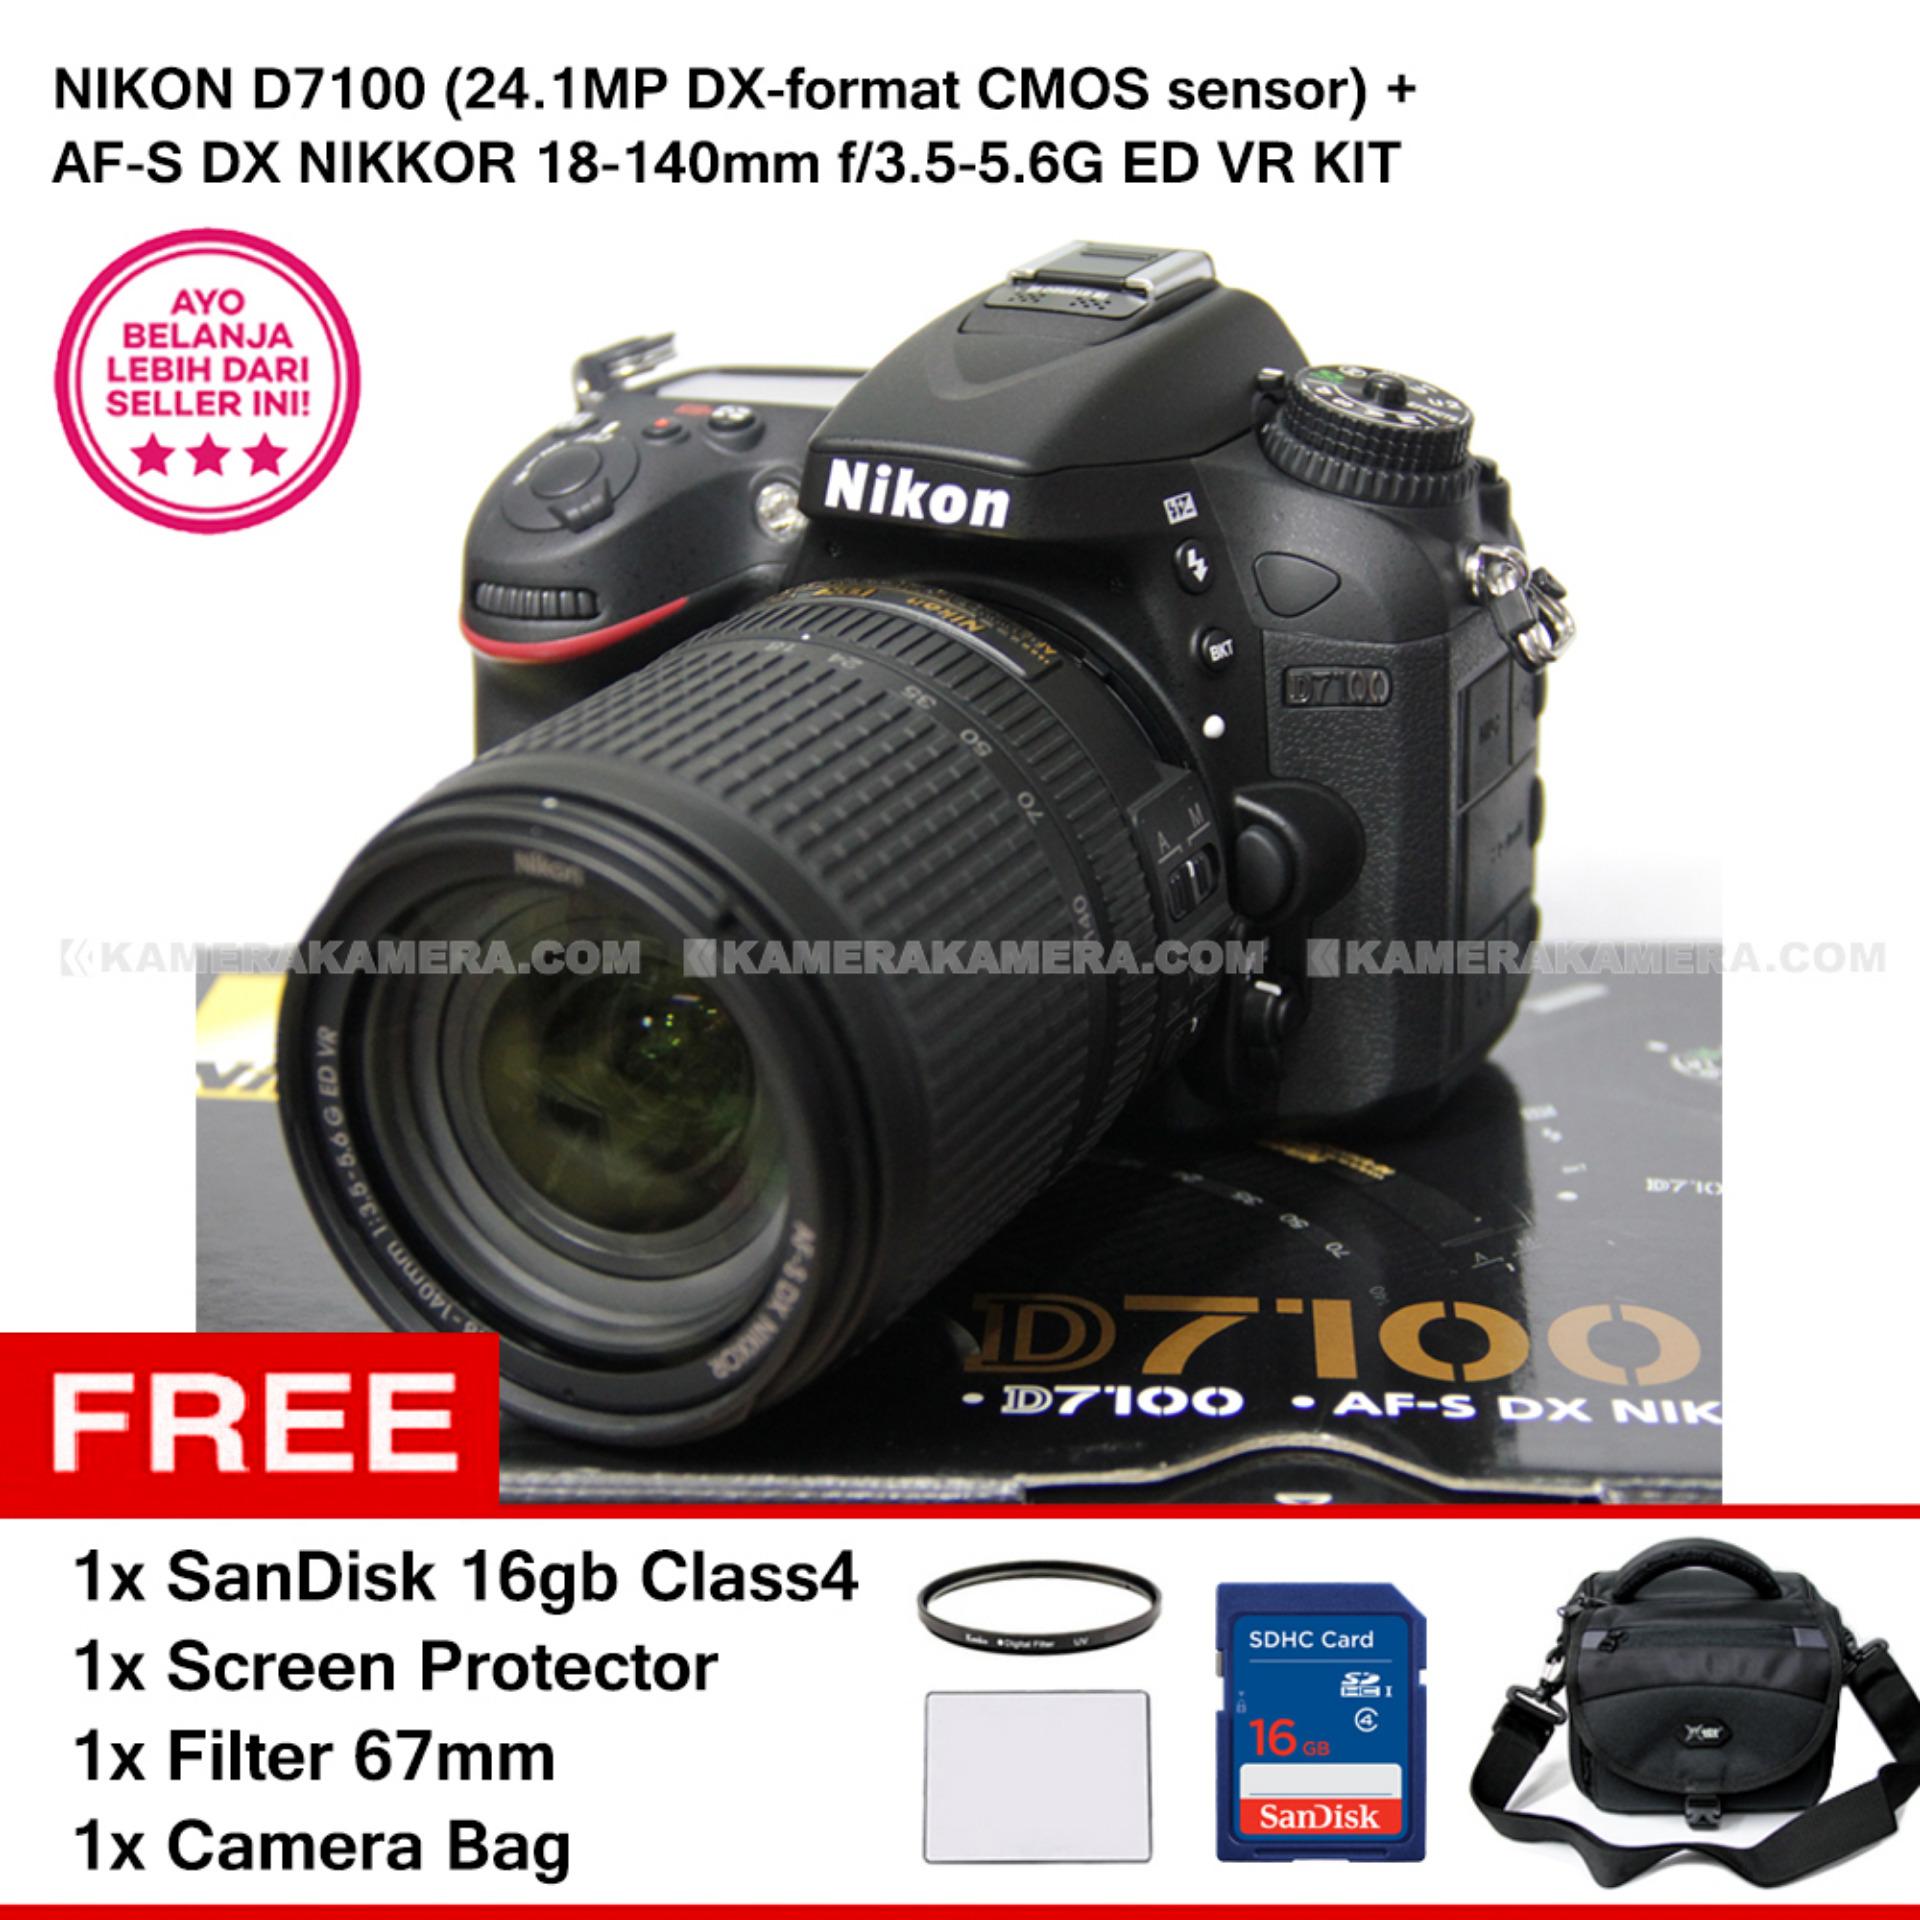 NIKON D7100 (24.1MP DX-format CMOS sensor) + AF-S DX NIKKOR 18-140mm f/3.5-5.6G ED VR KIT + SanDisk 16Gb + Screen Protector + Filter 67mm + Camera Bag